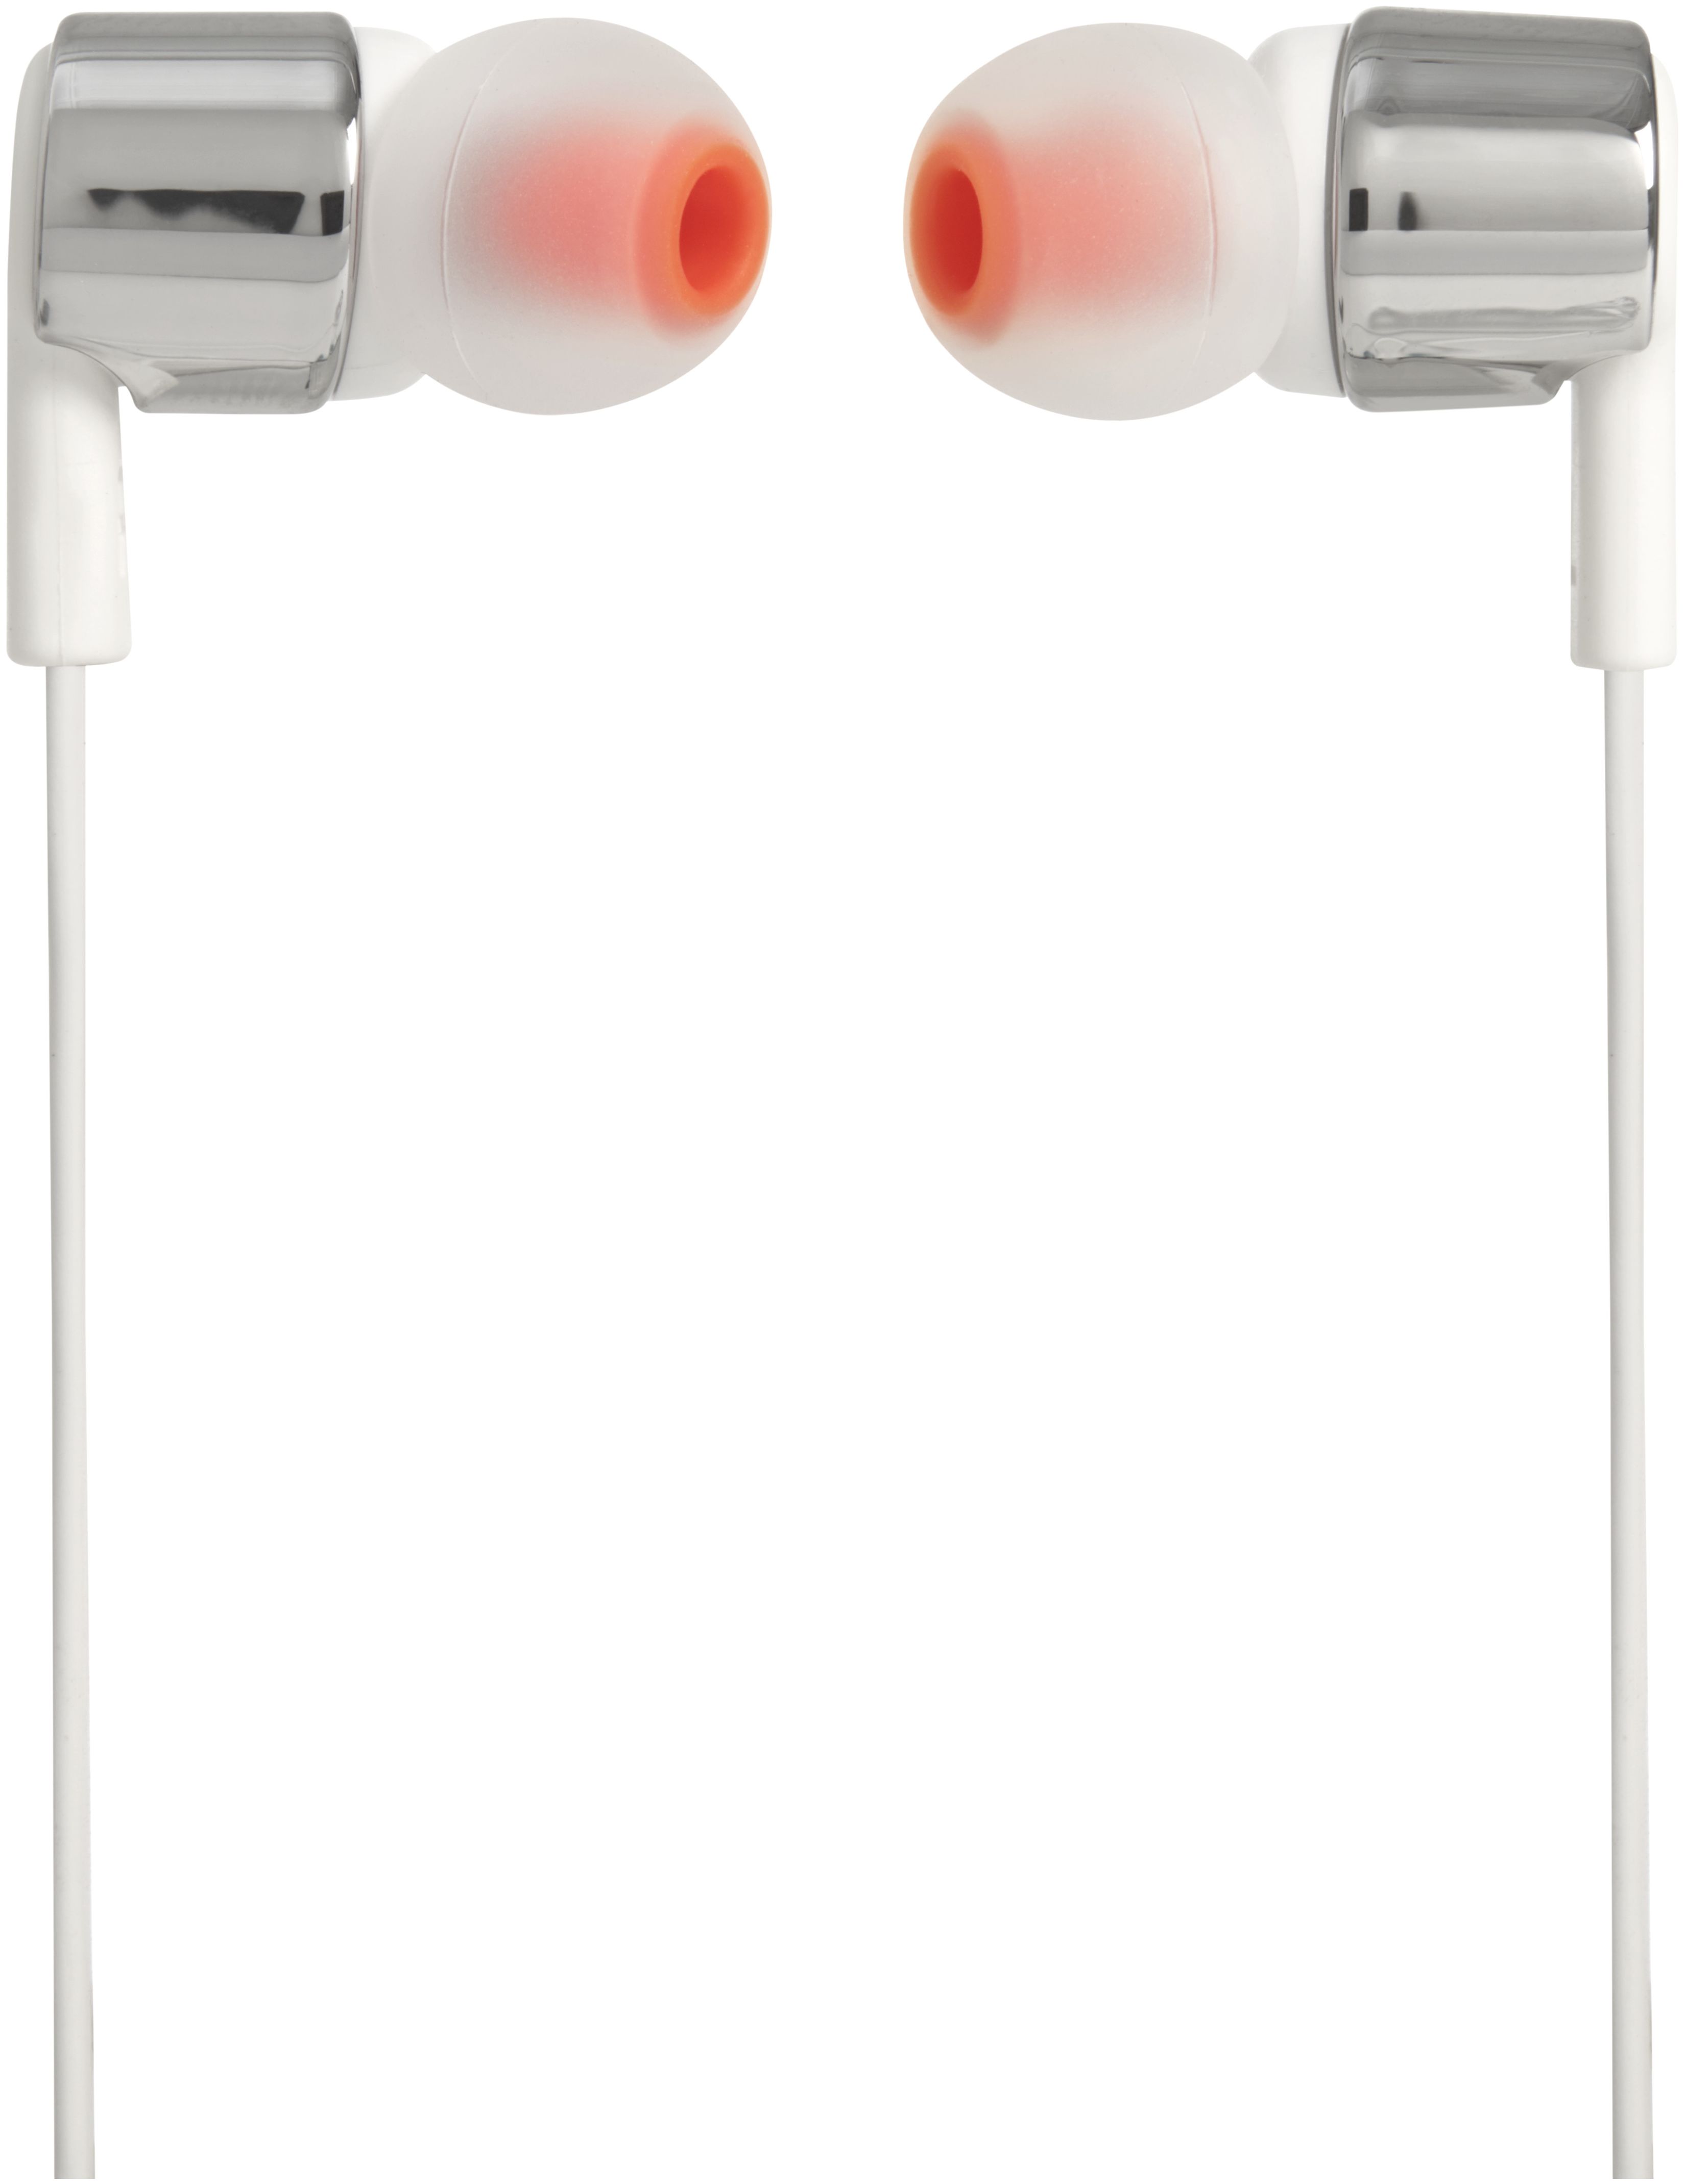 von 210 expert Technomarkt (Grau) Kopfhörer Kabelgebunden Tune JBL In-Ear